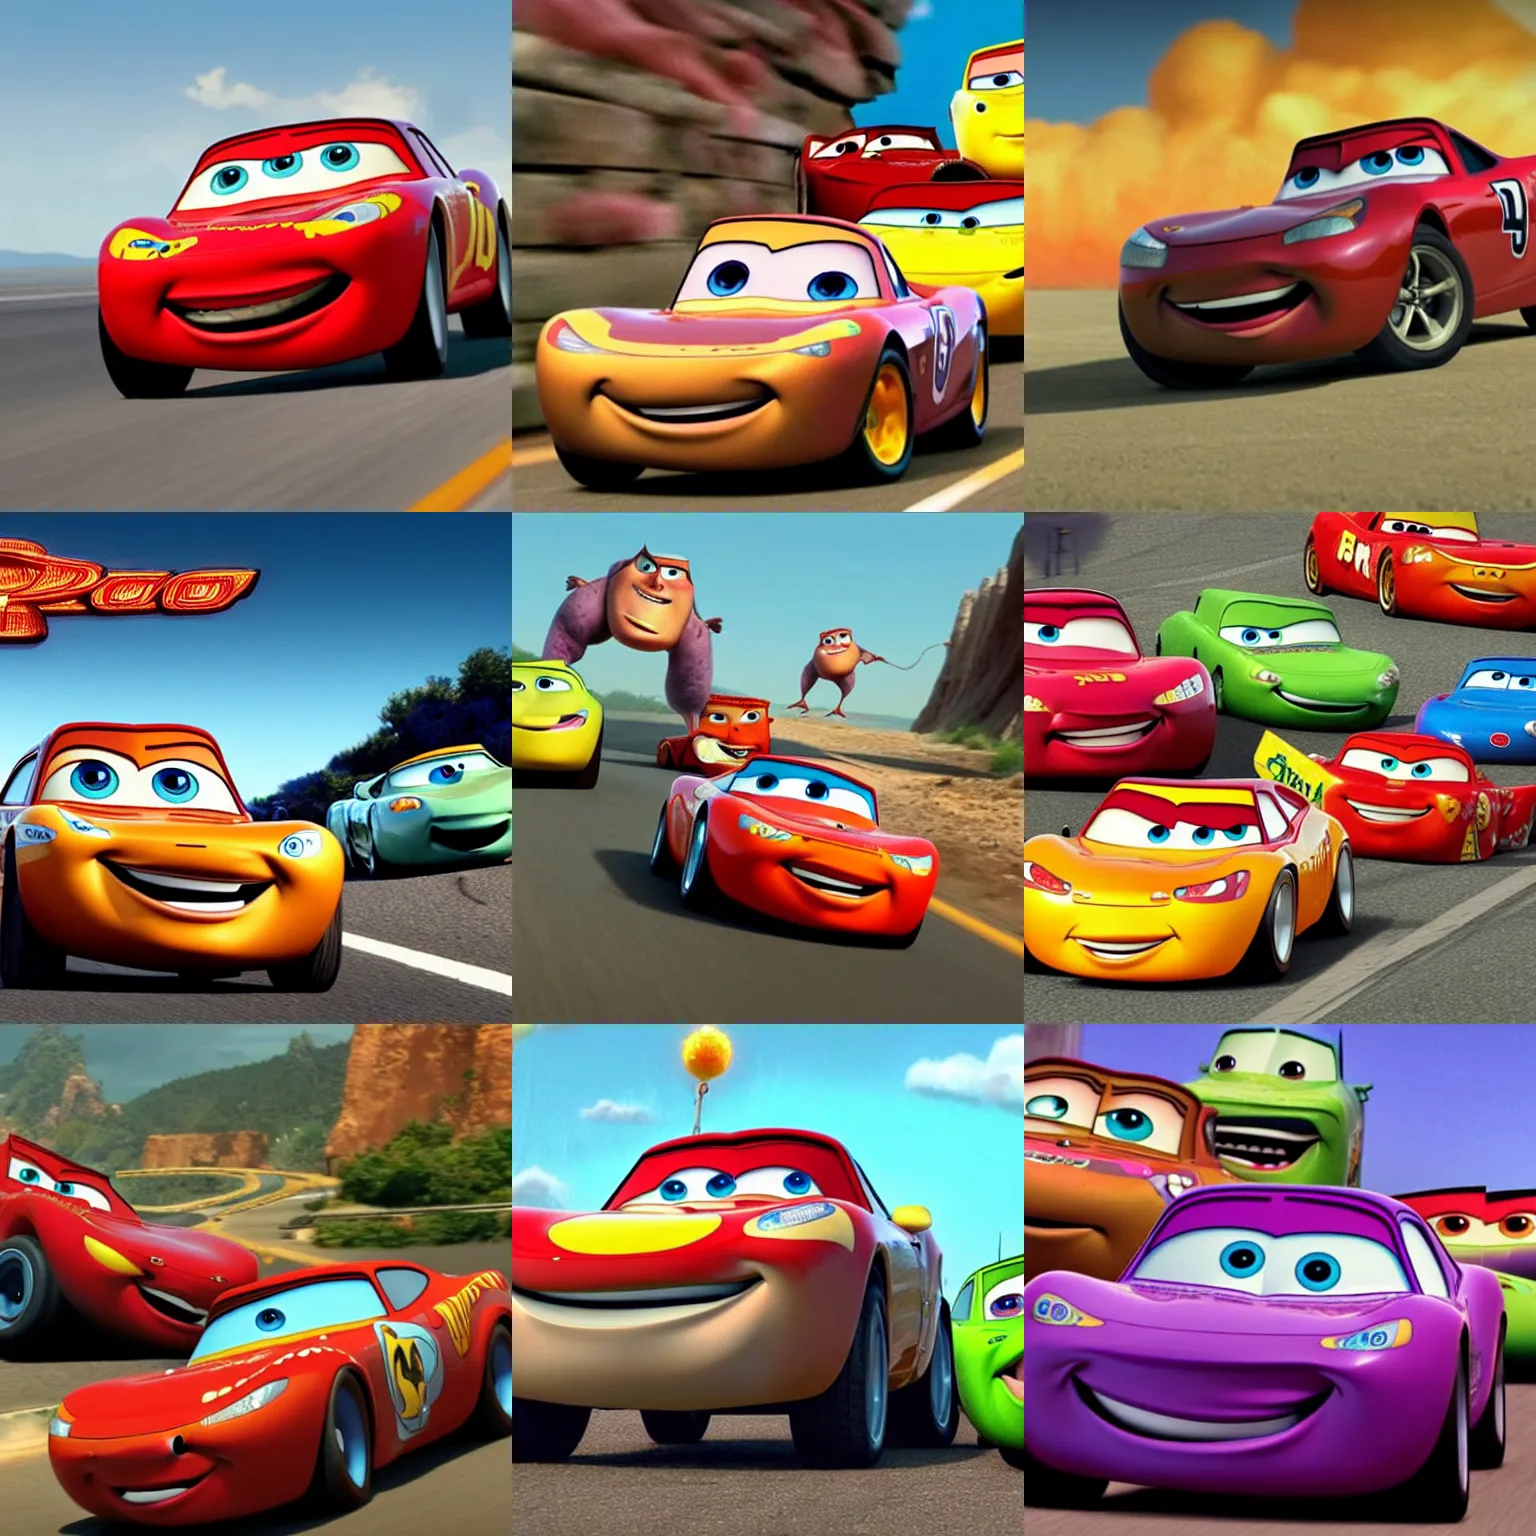 Prompt: leaked pixar screenshot of upcoming film cars 4